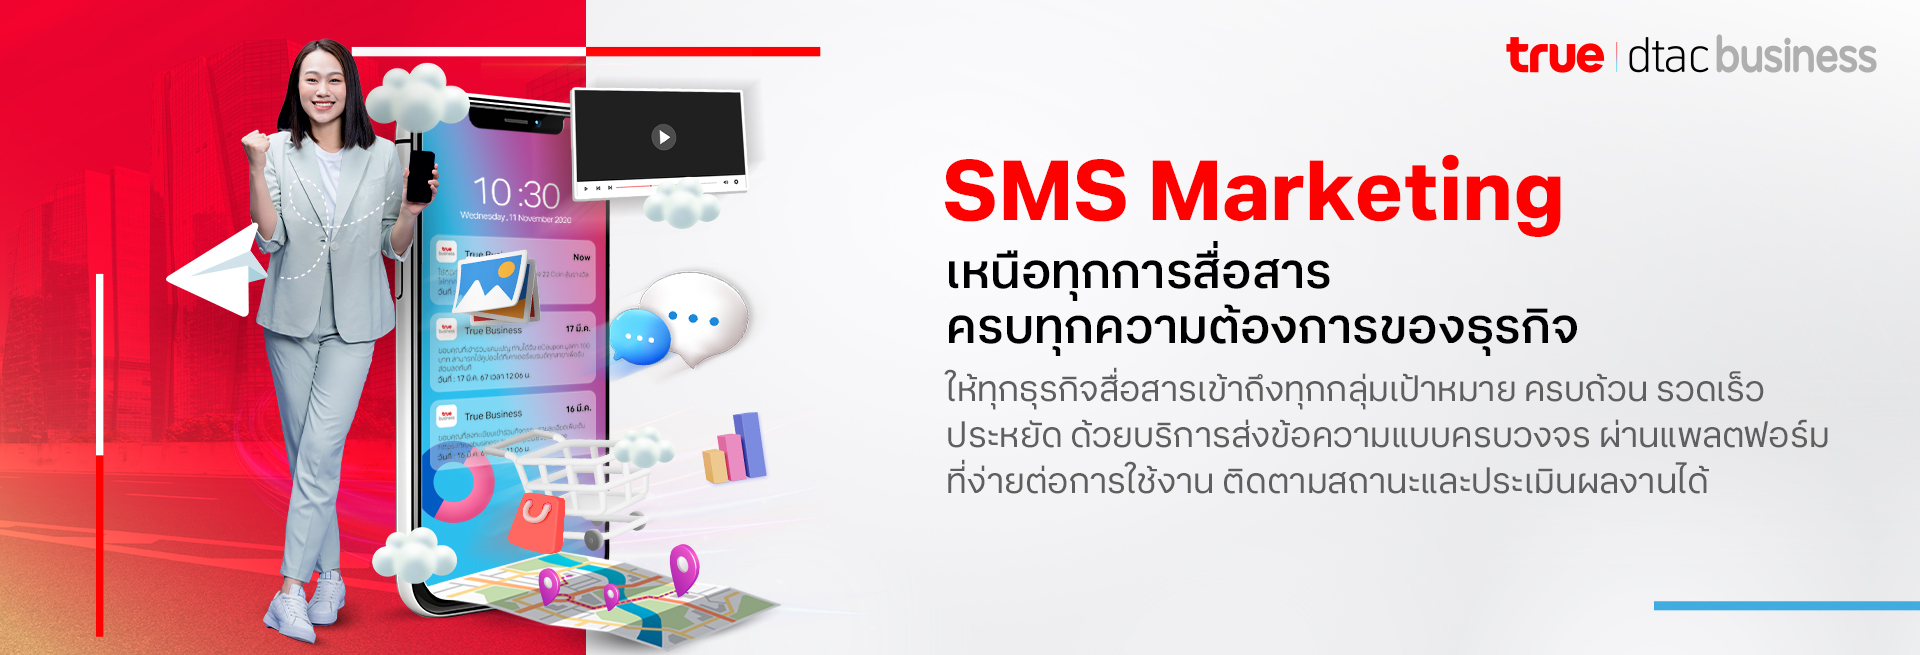 banner-sms-marketing-desktop-1920x655